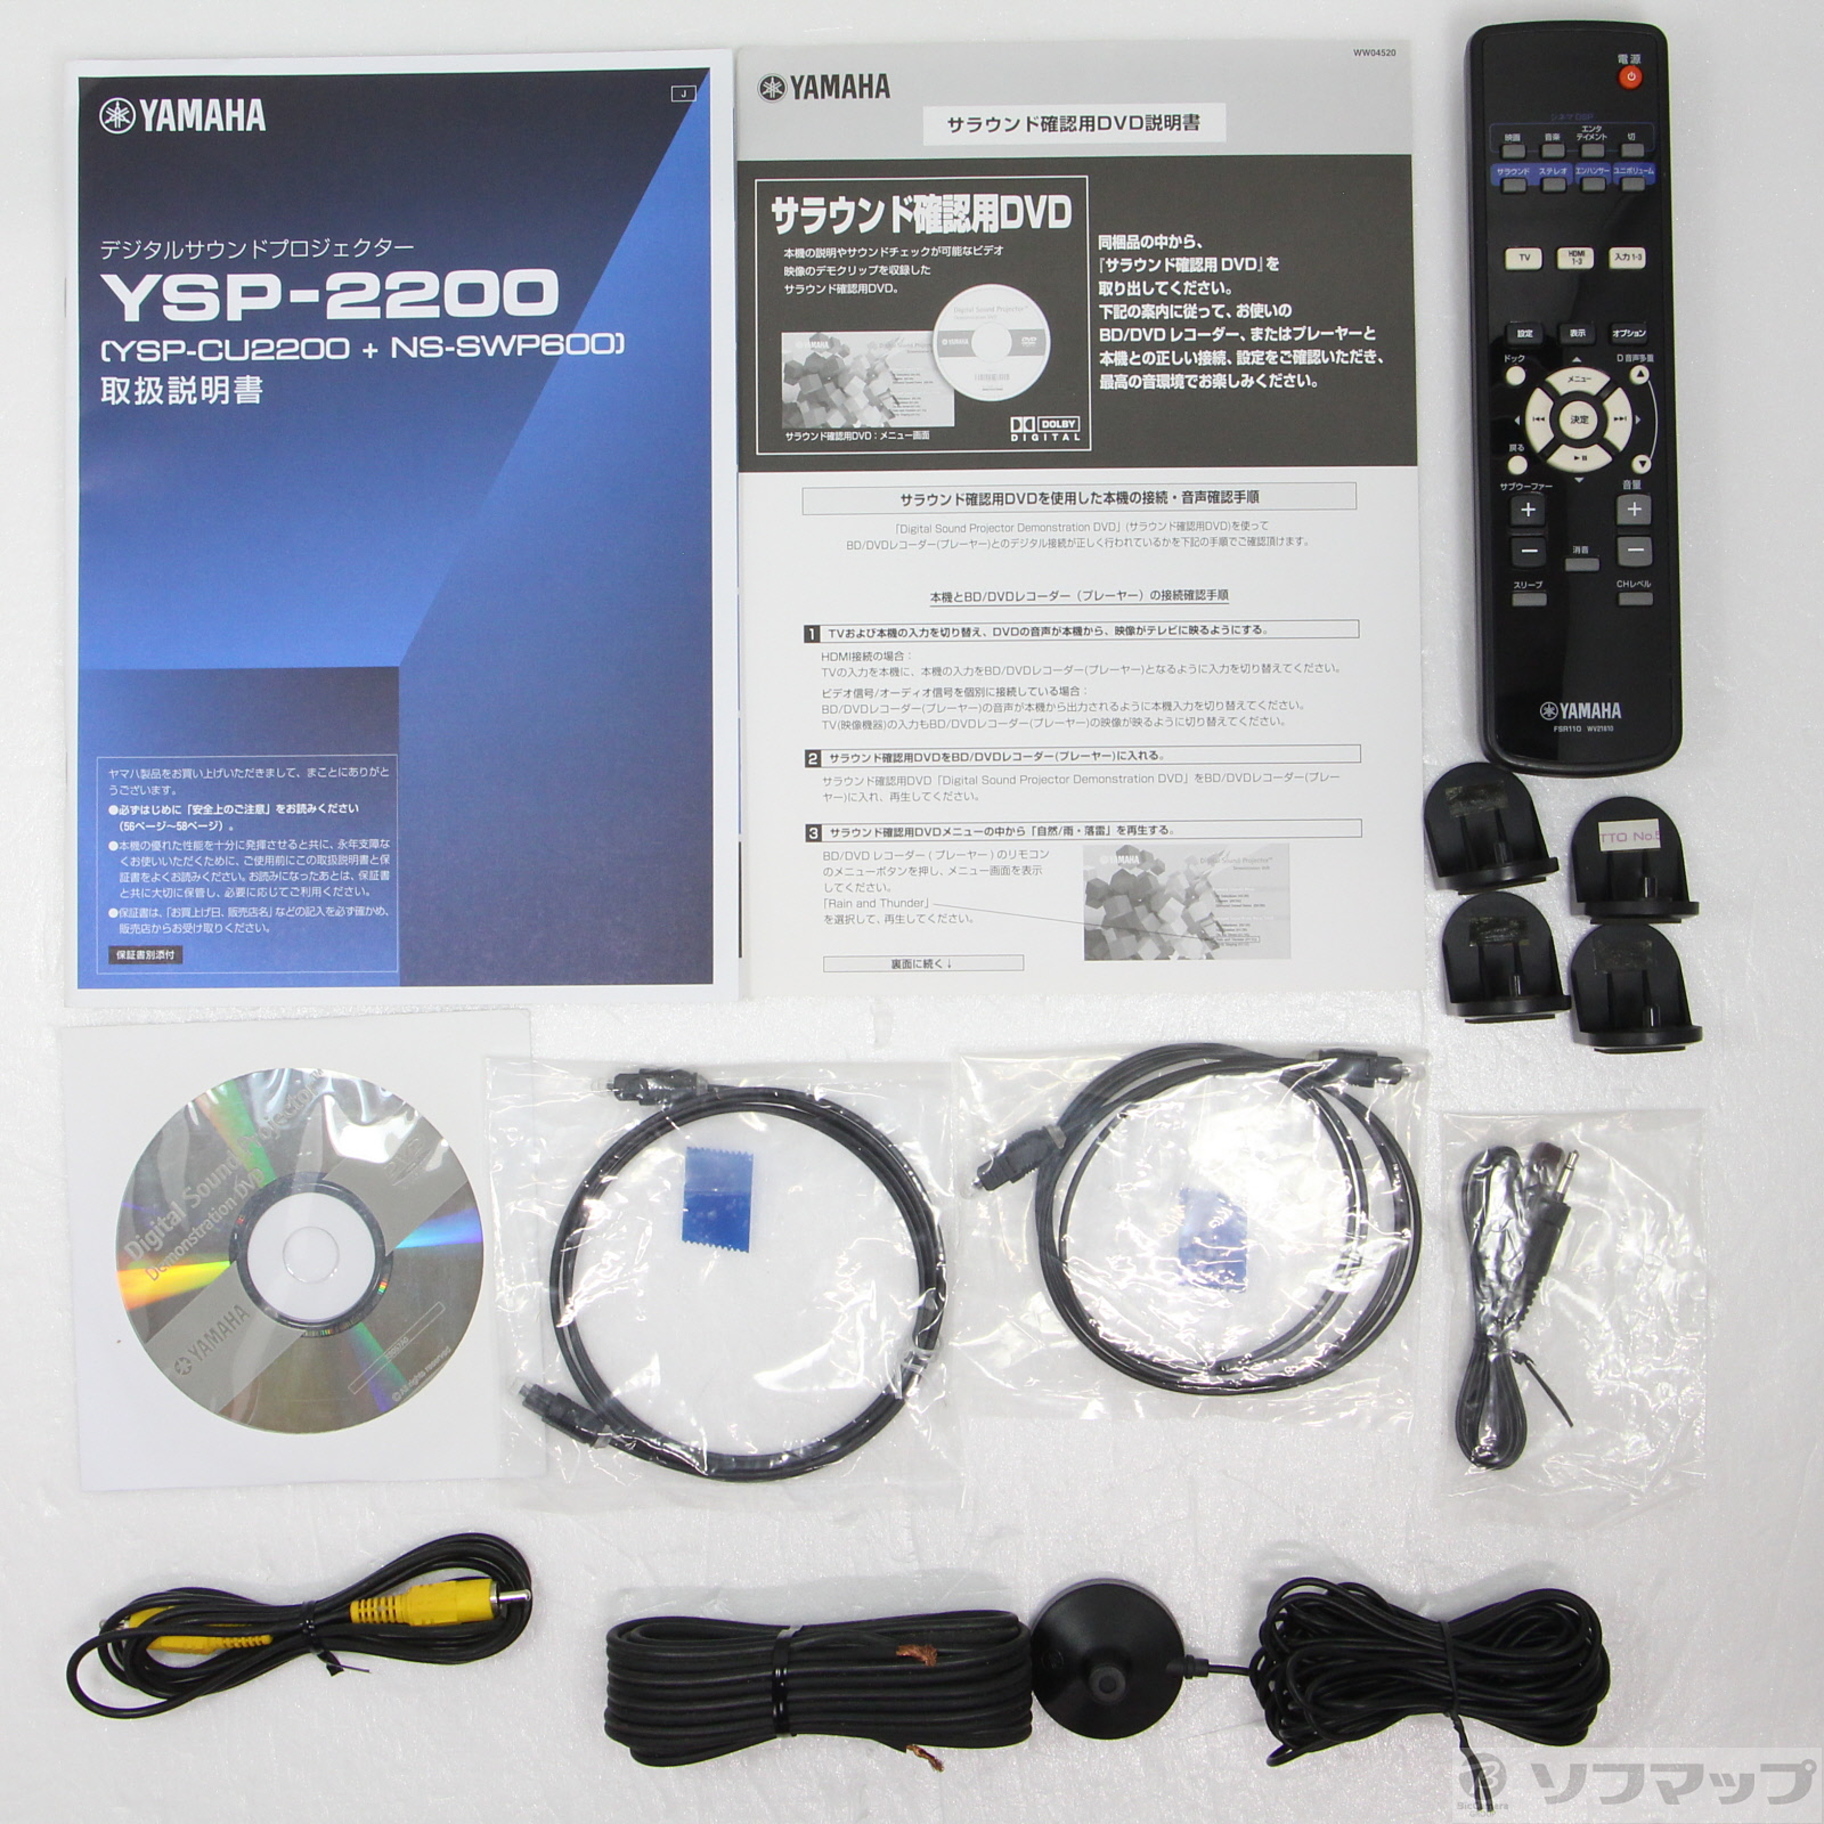 再値下げ YAMAHA 7.1chデジタルサウンドプロジェクター YSP-2200 リモコン インテリビームマイク付属 - オーディオ